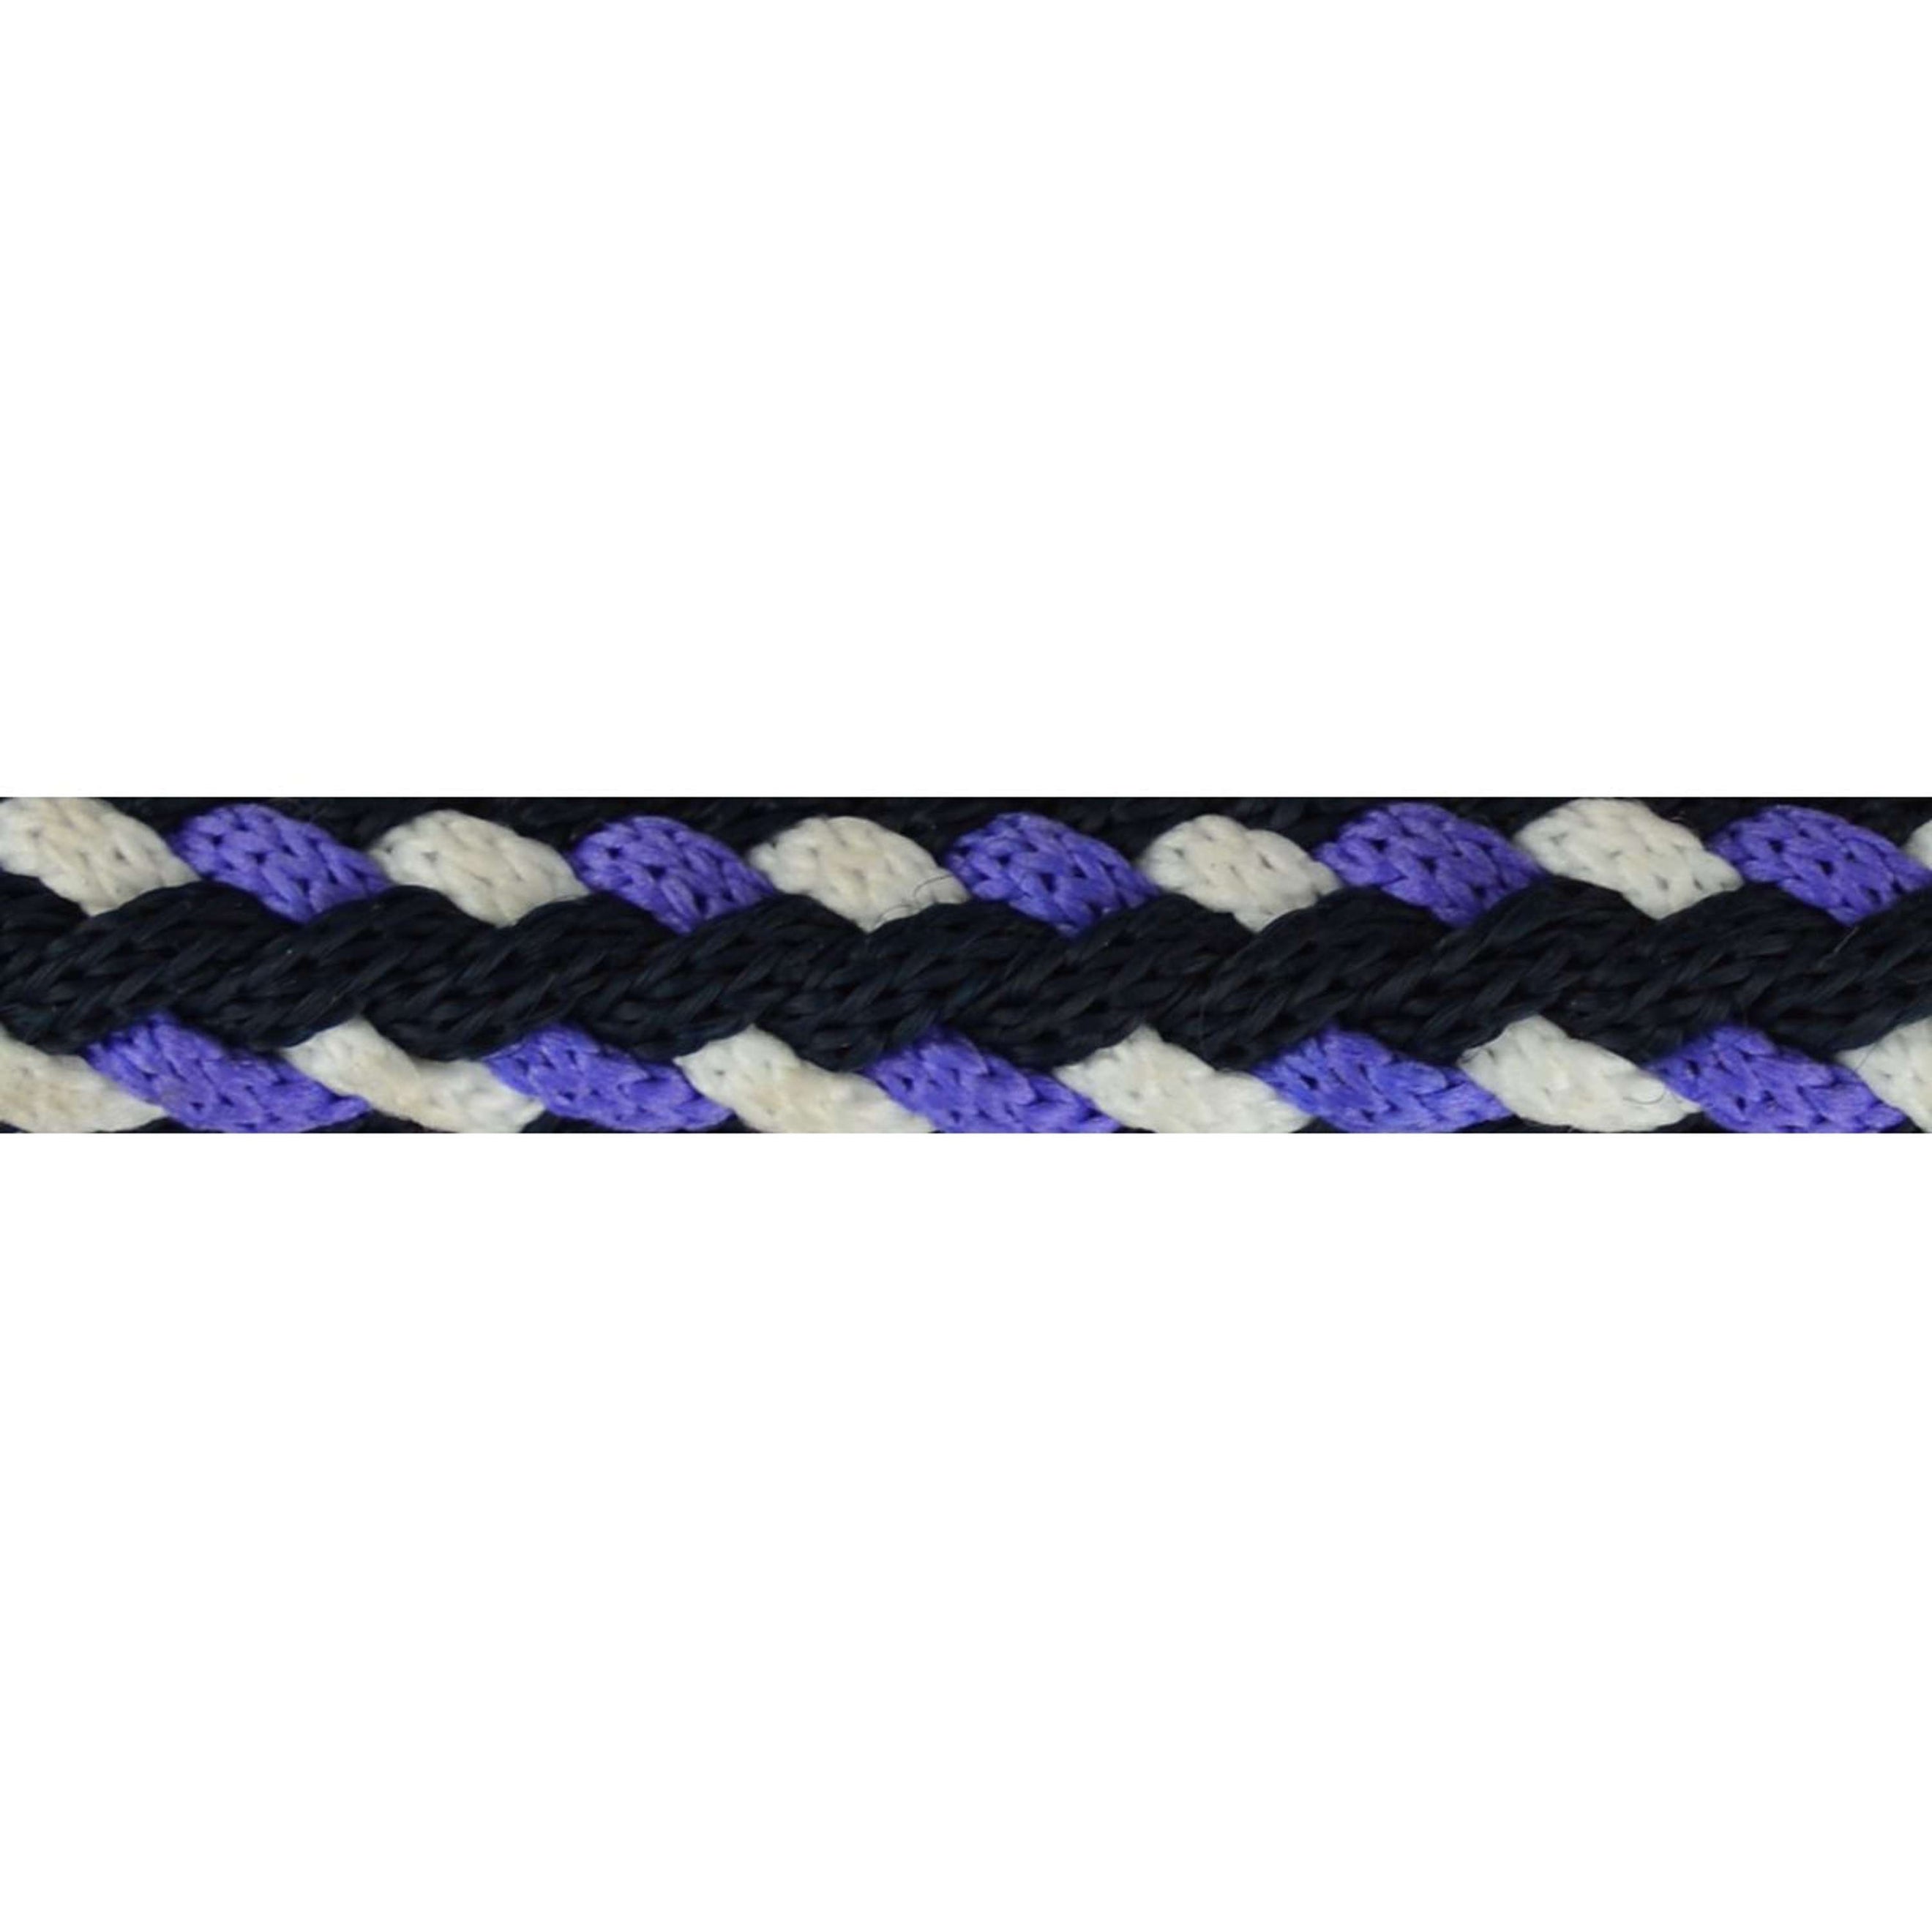 Norton Corde pour Licol Tricolore Violet/Noir/Blanc